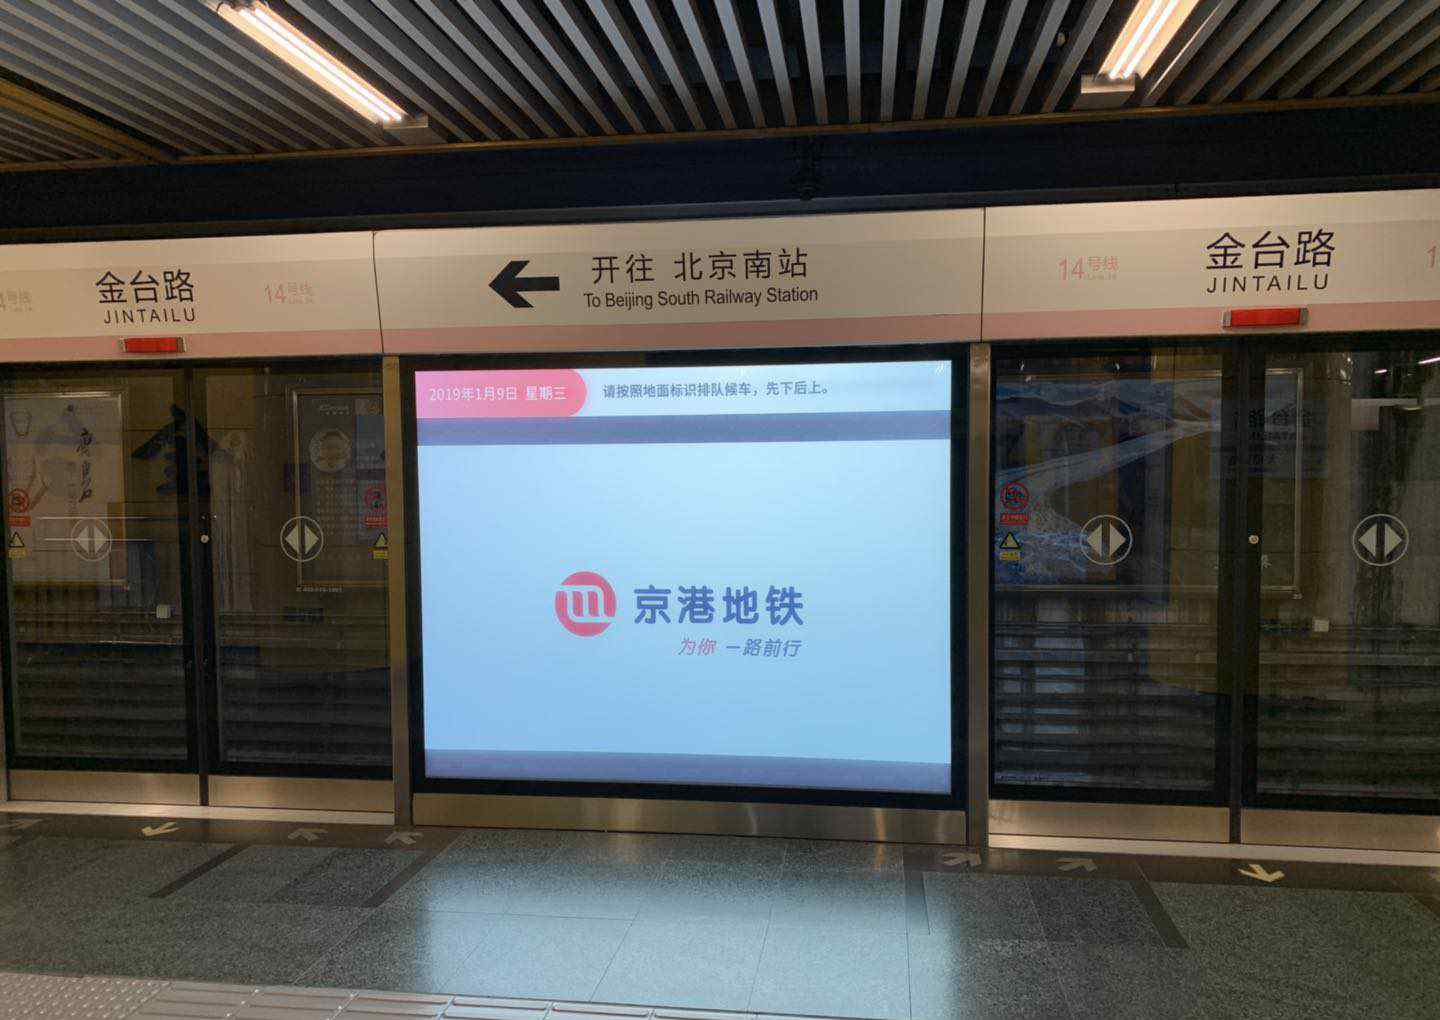 地铁14号线站点 北京地铁14号线金台路站新“黑科技”亮相 后续将在多站投入使用